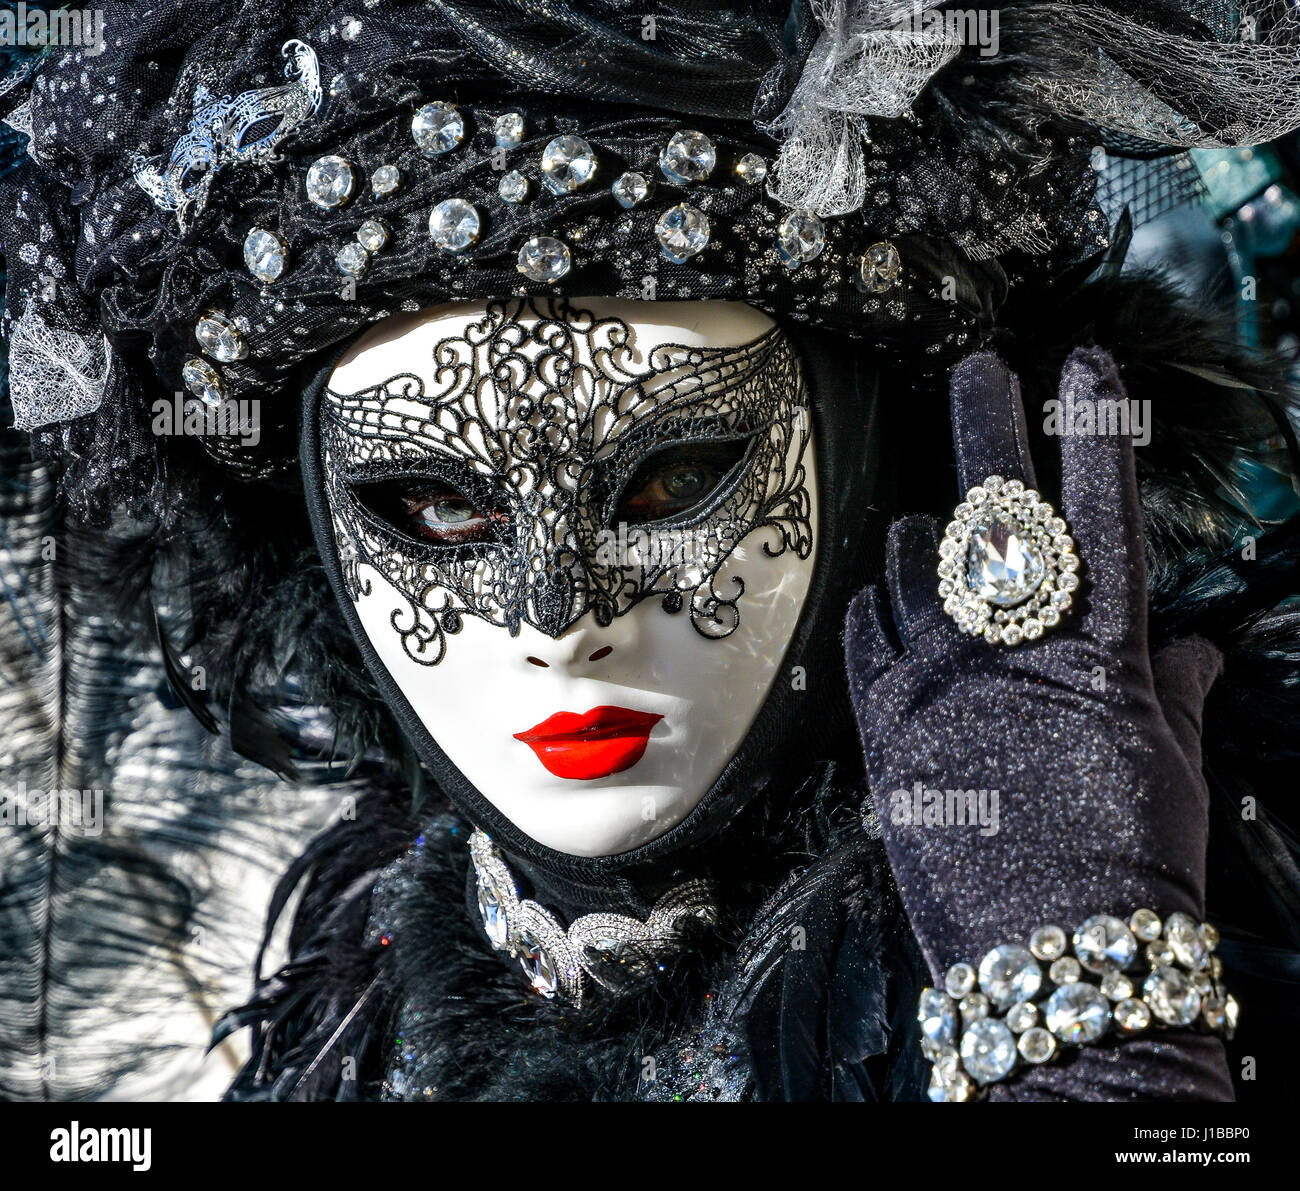 Una mujer que llevaba una máscara veneciana y trajes de carnaval